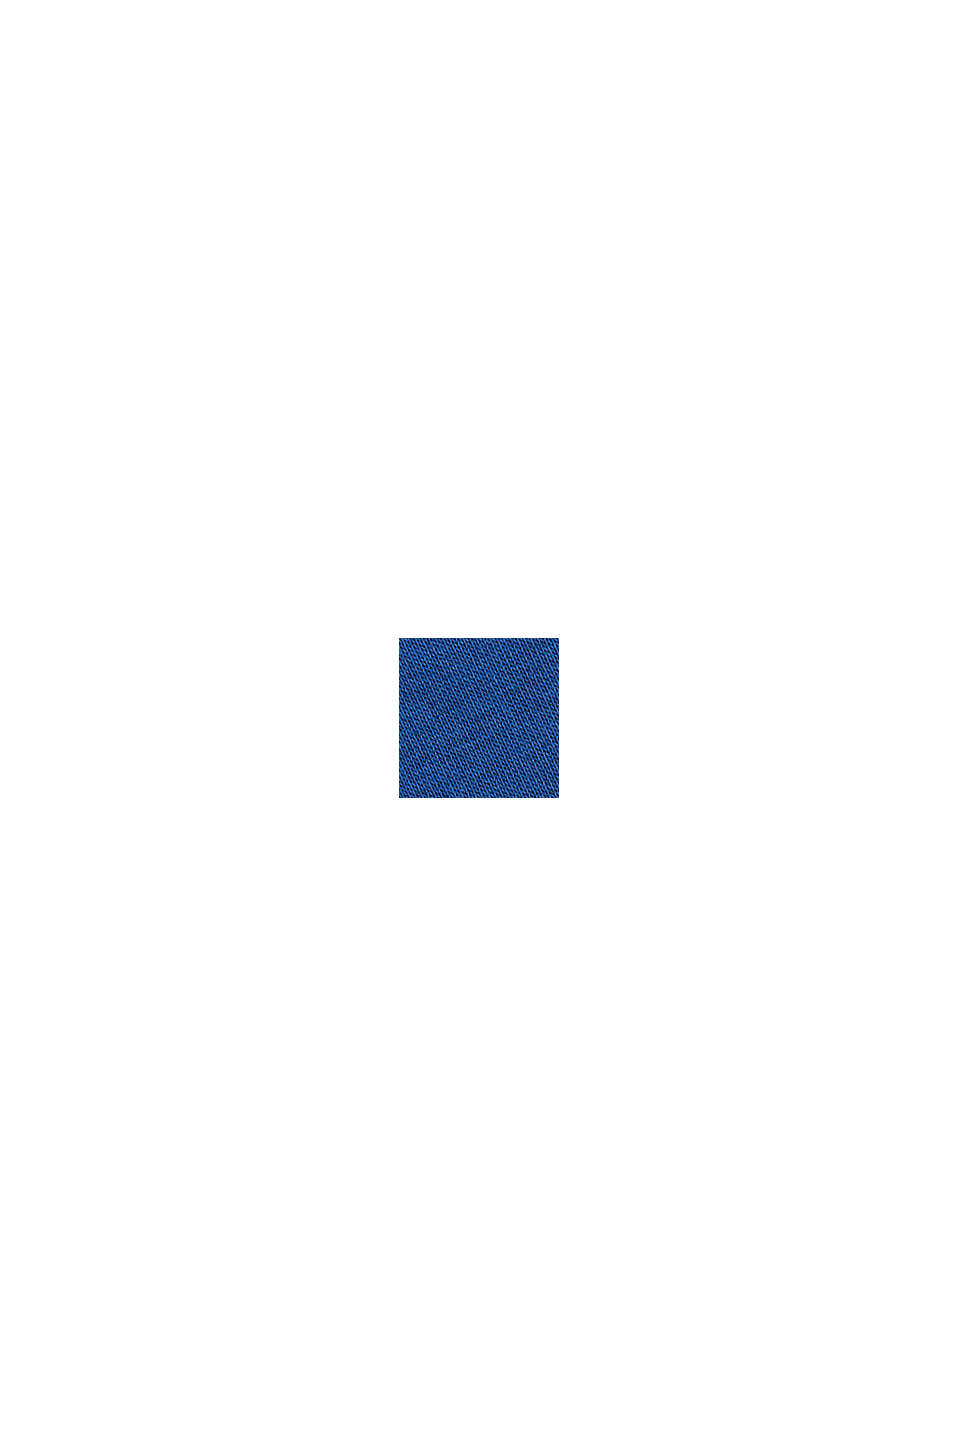 Logokirjailtu collegepaita puuvillasekoitetta, BRIGHT BLUE, swatch